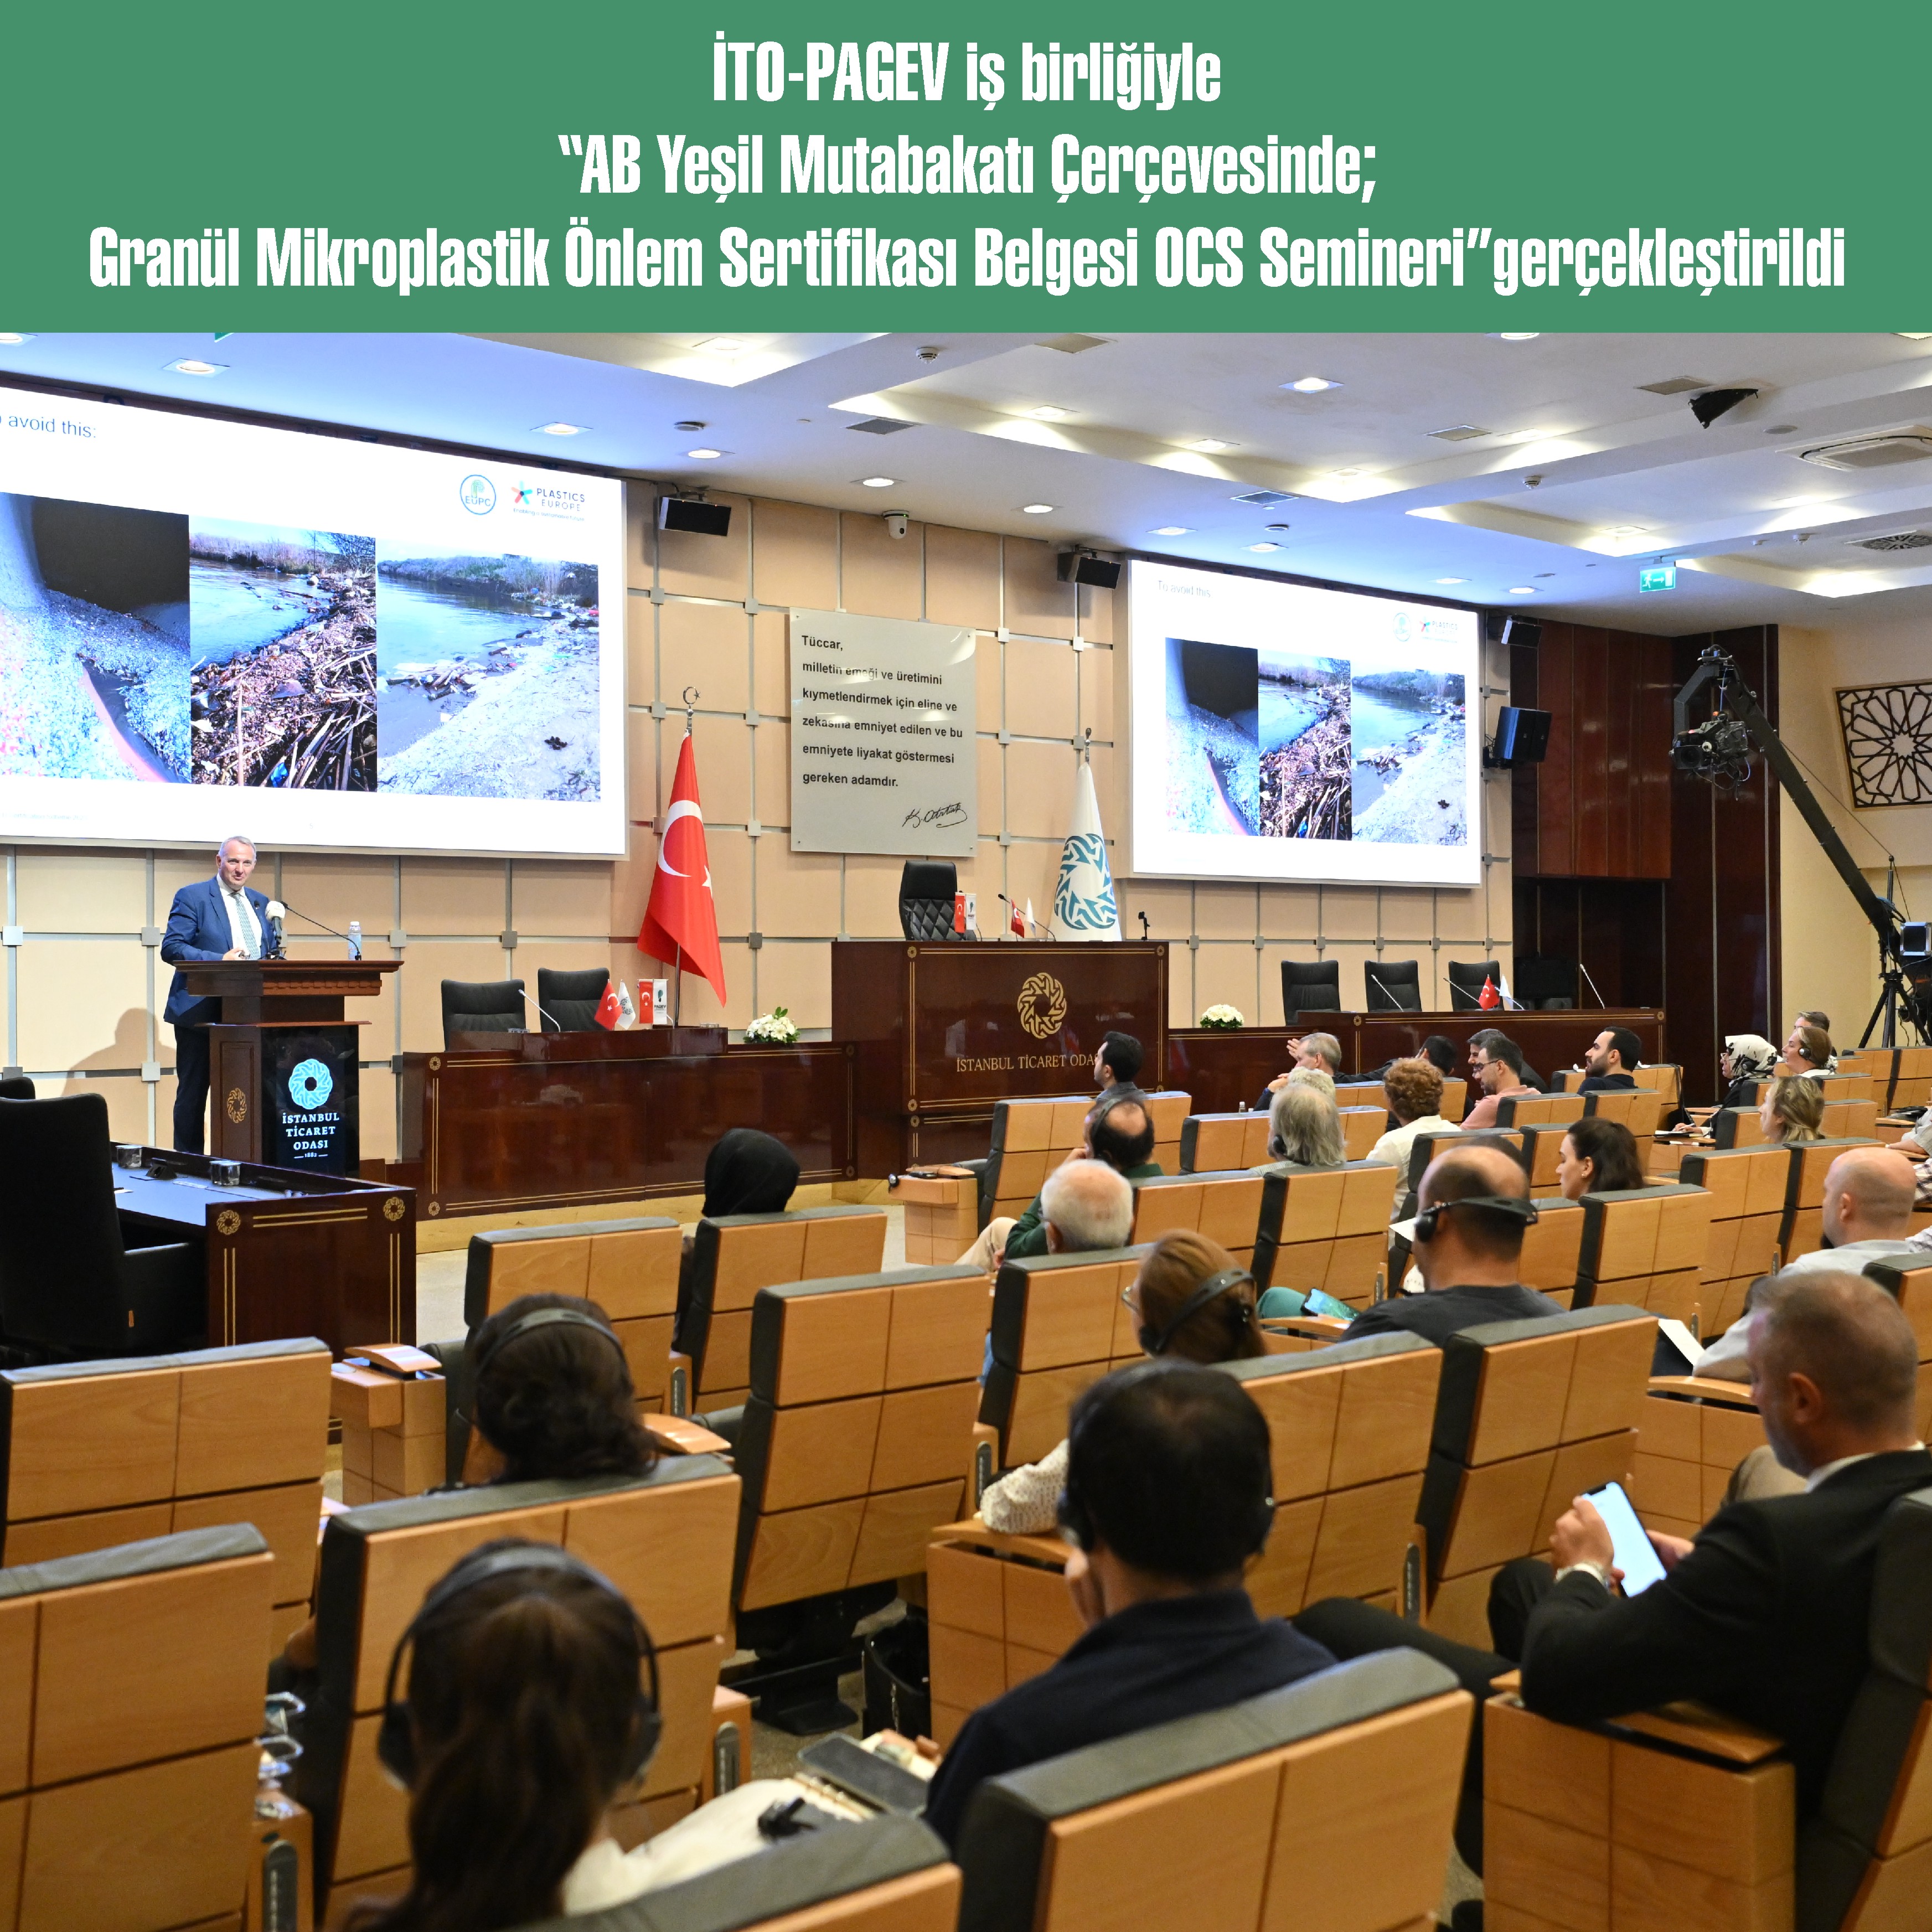 İTO-PAGEV iş birliğiyle “AB Yeşil Mutabakatı Çerçevesinde; Granül Mikroplastik Önlem Sertifikası Belgesi OCS Semineri” gerçekleştirildi